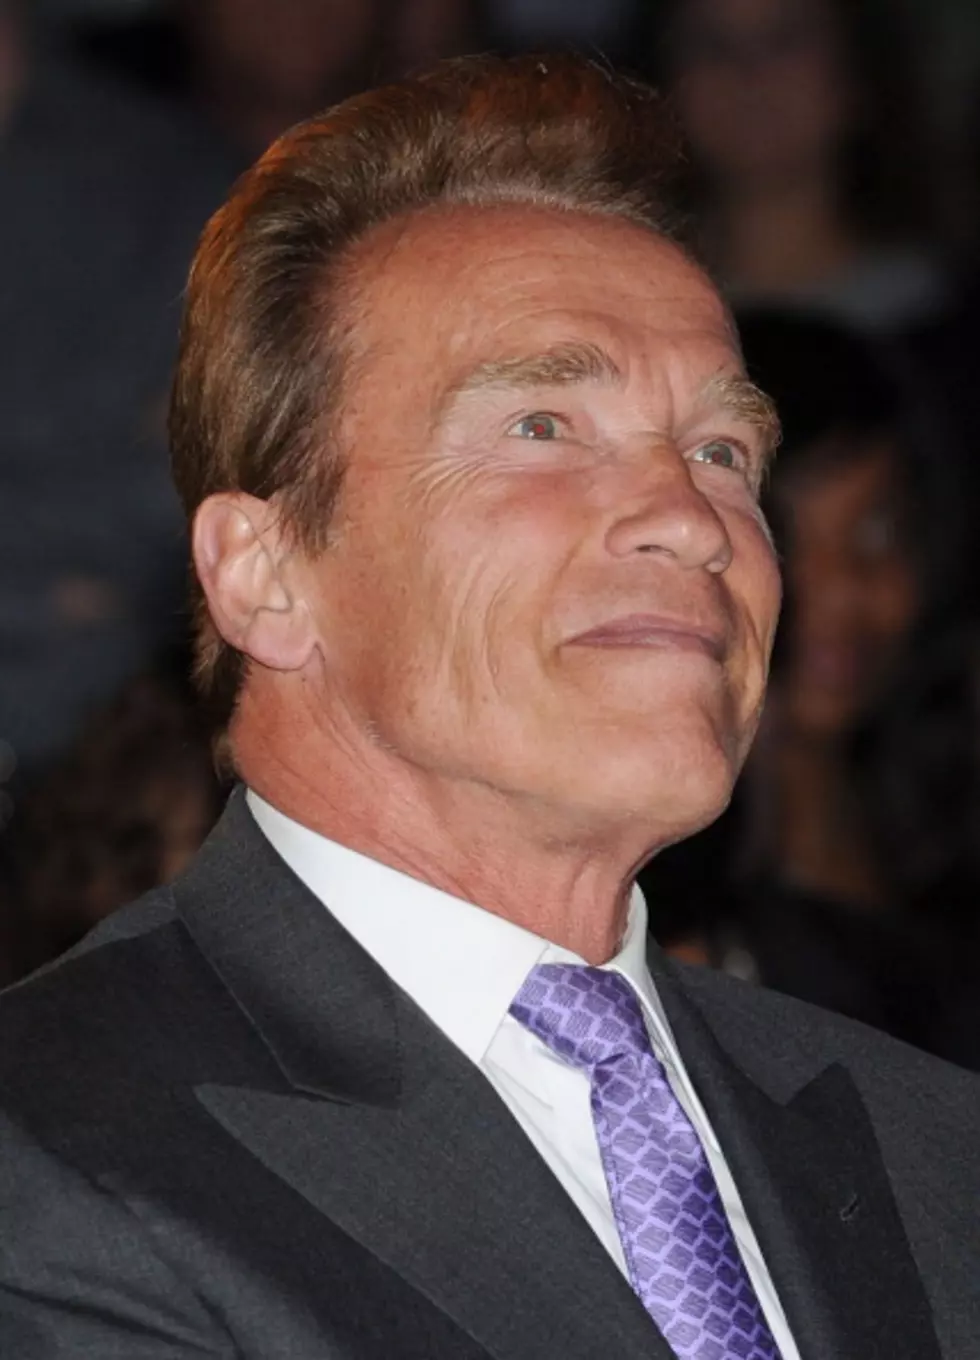 Return To Movie Making On Hold For Arnold Schwarzenegger